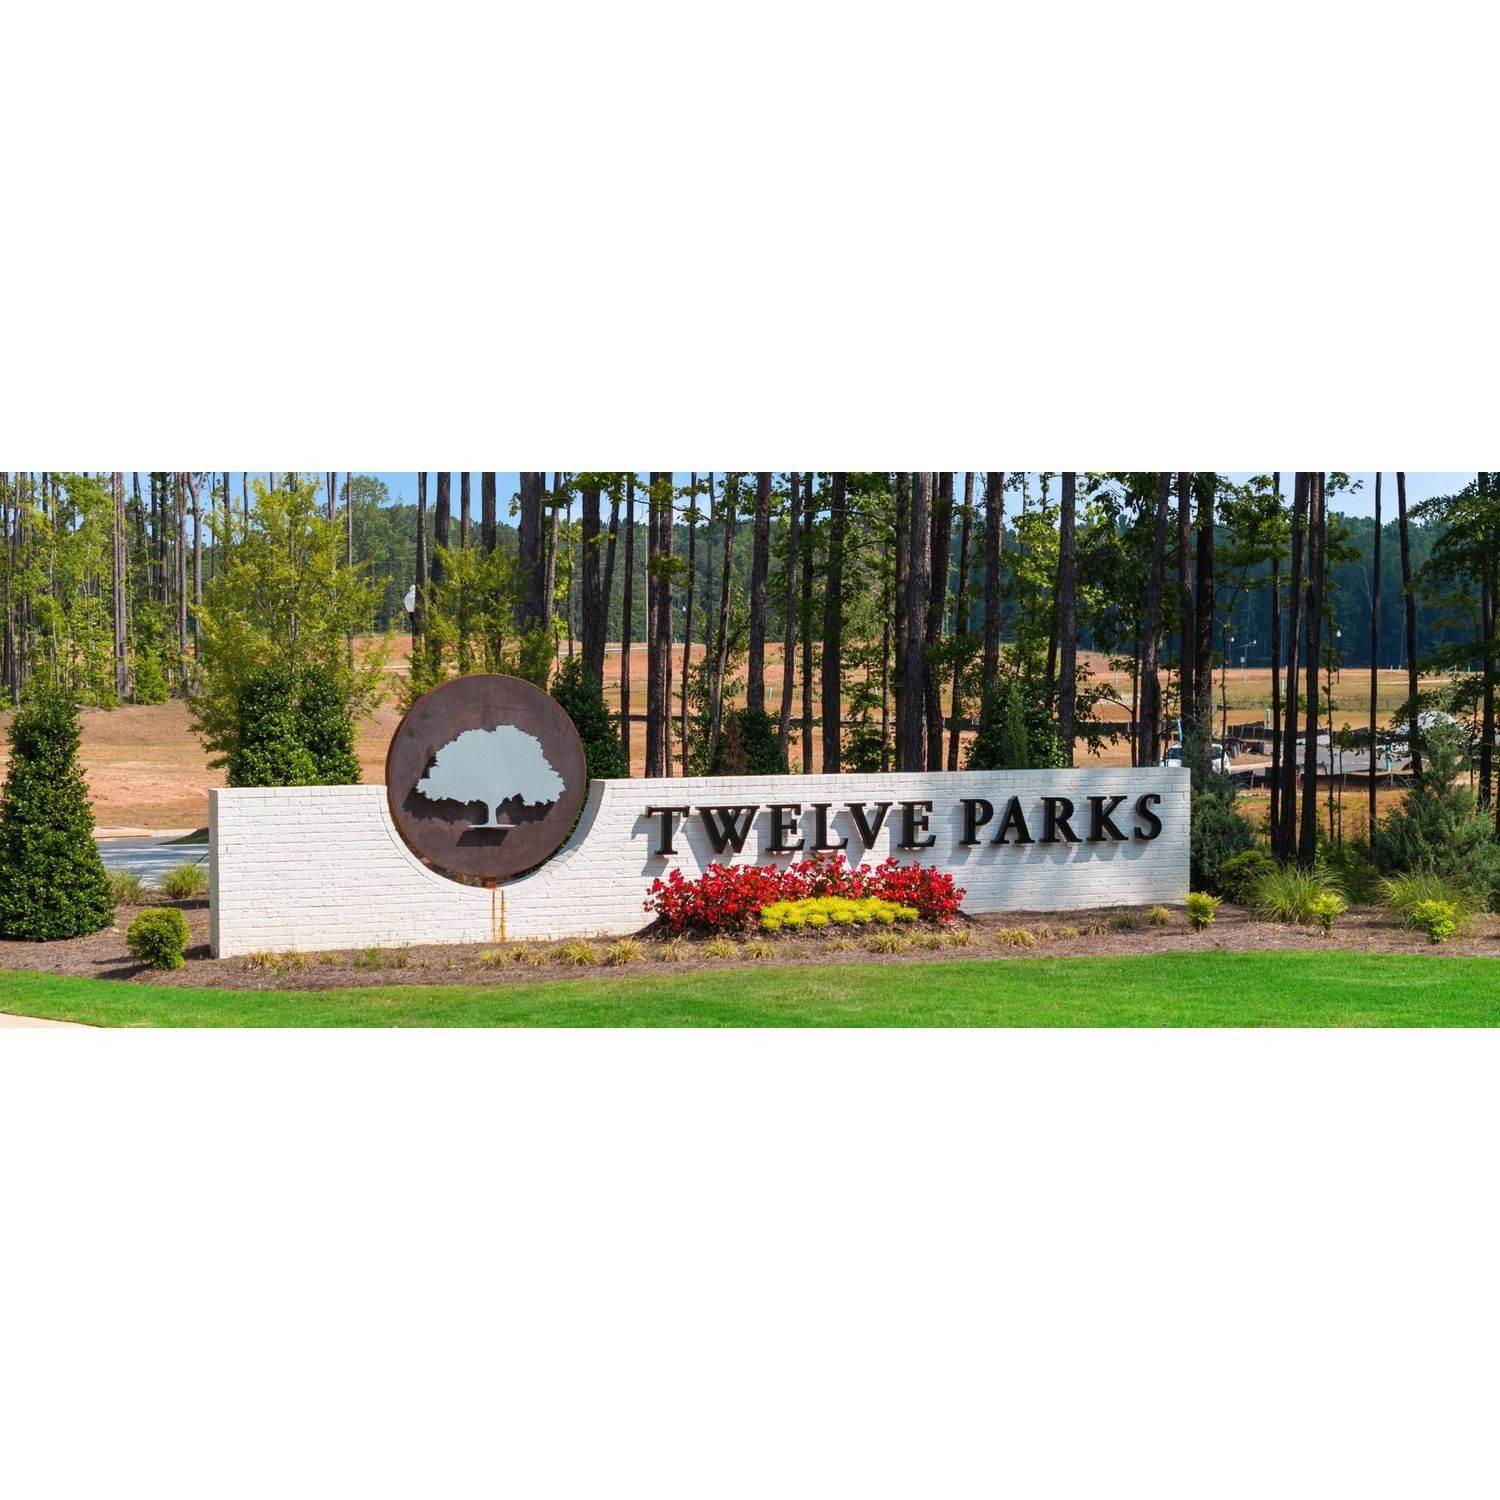 4. Twelve Parks - Twelve Parks Ranch building at 8 Foothills Trail, Sharpsburg, GA 30277